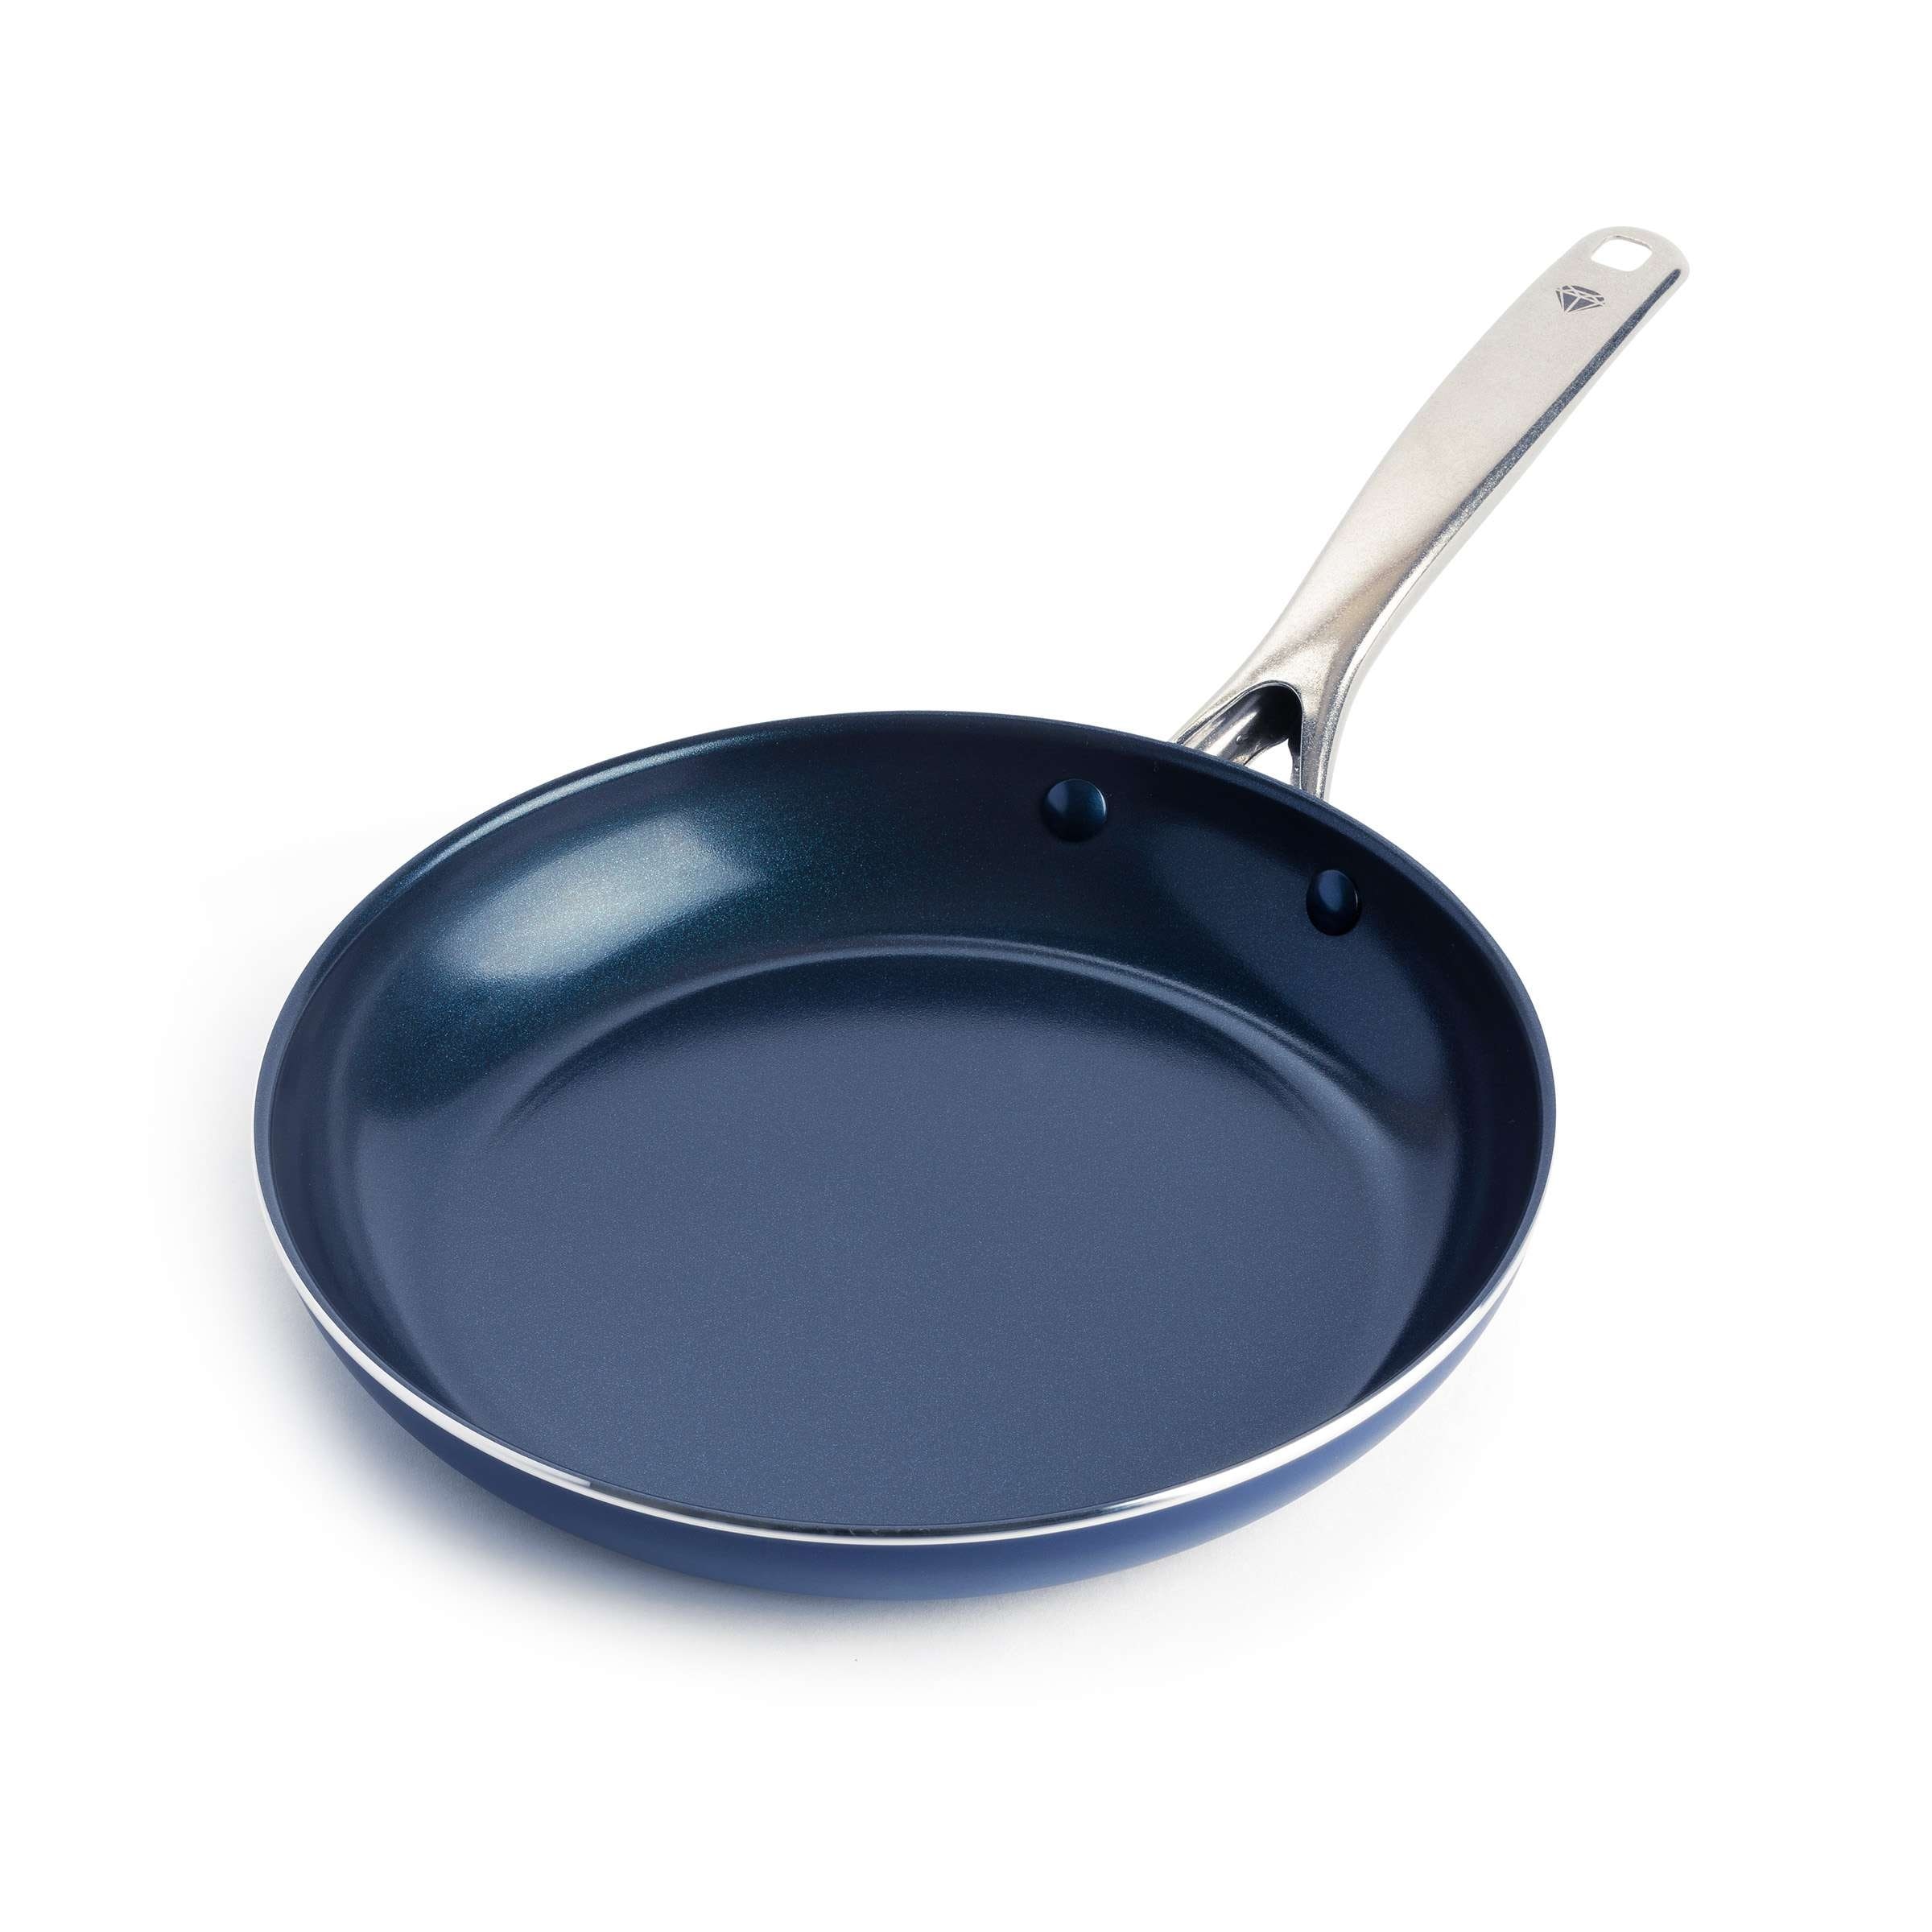 Blue Diamond Ceramic Nonstick 14 inch Open Frying Pan with Helper Handle